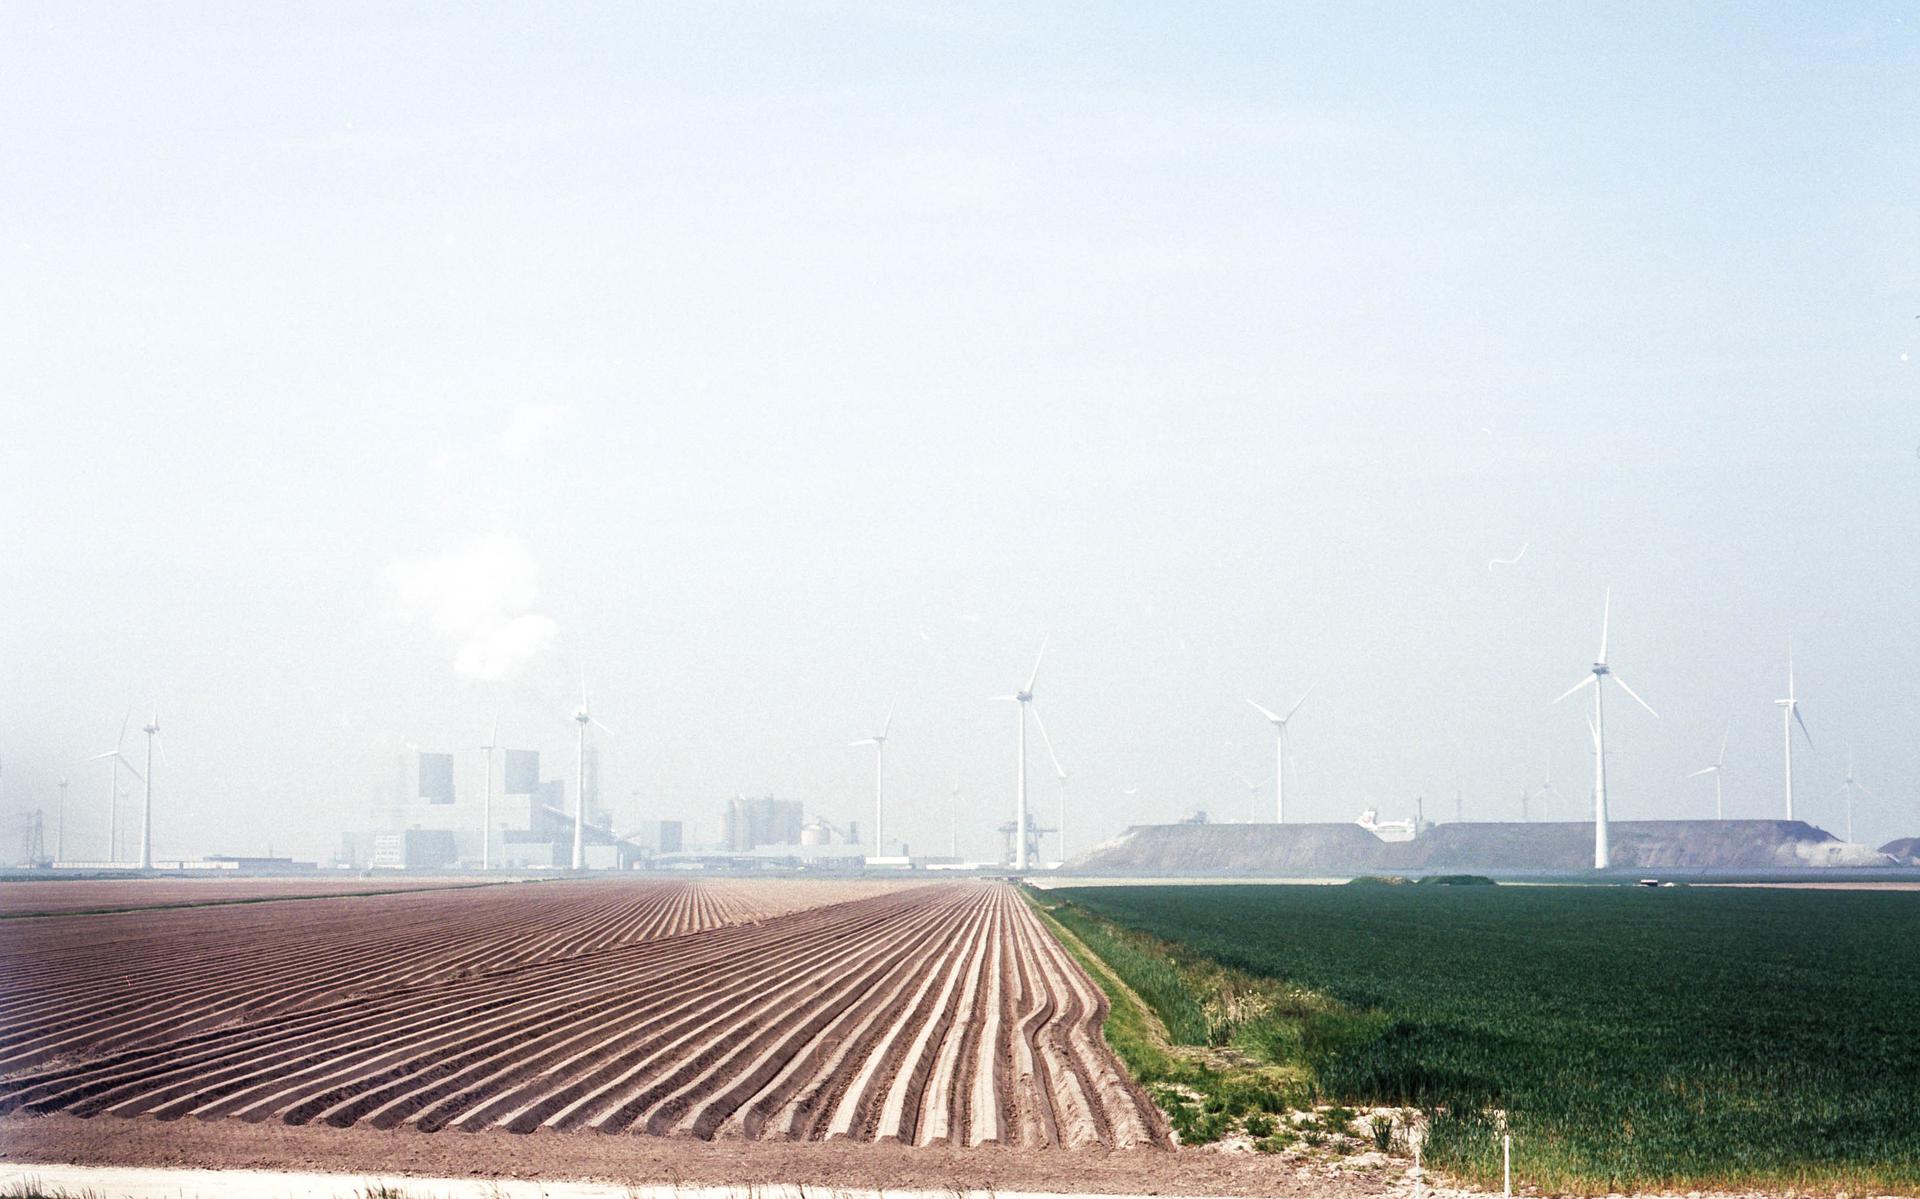 De Oostpolder die is aangewezen voor de bouw. De landbouwgrond wordt geroemd om de kwaliteit. De foto is genomen vanaf de dijk die pal naast Oudeschip ligt. De Eemshaven is in de verte te zien.